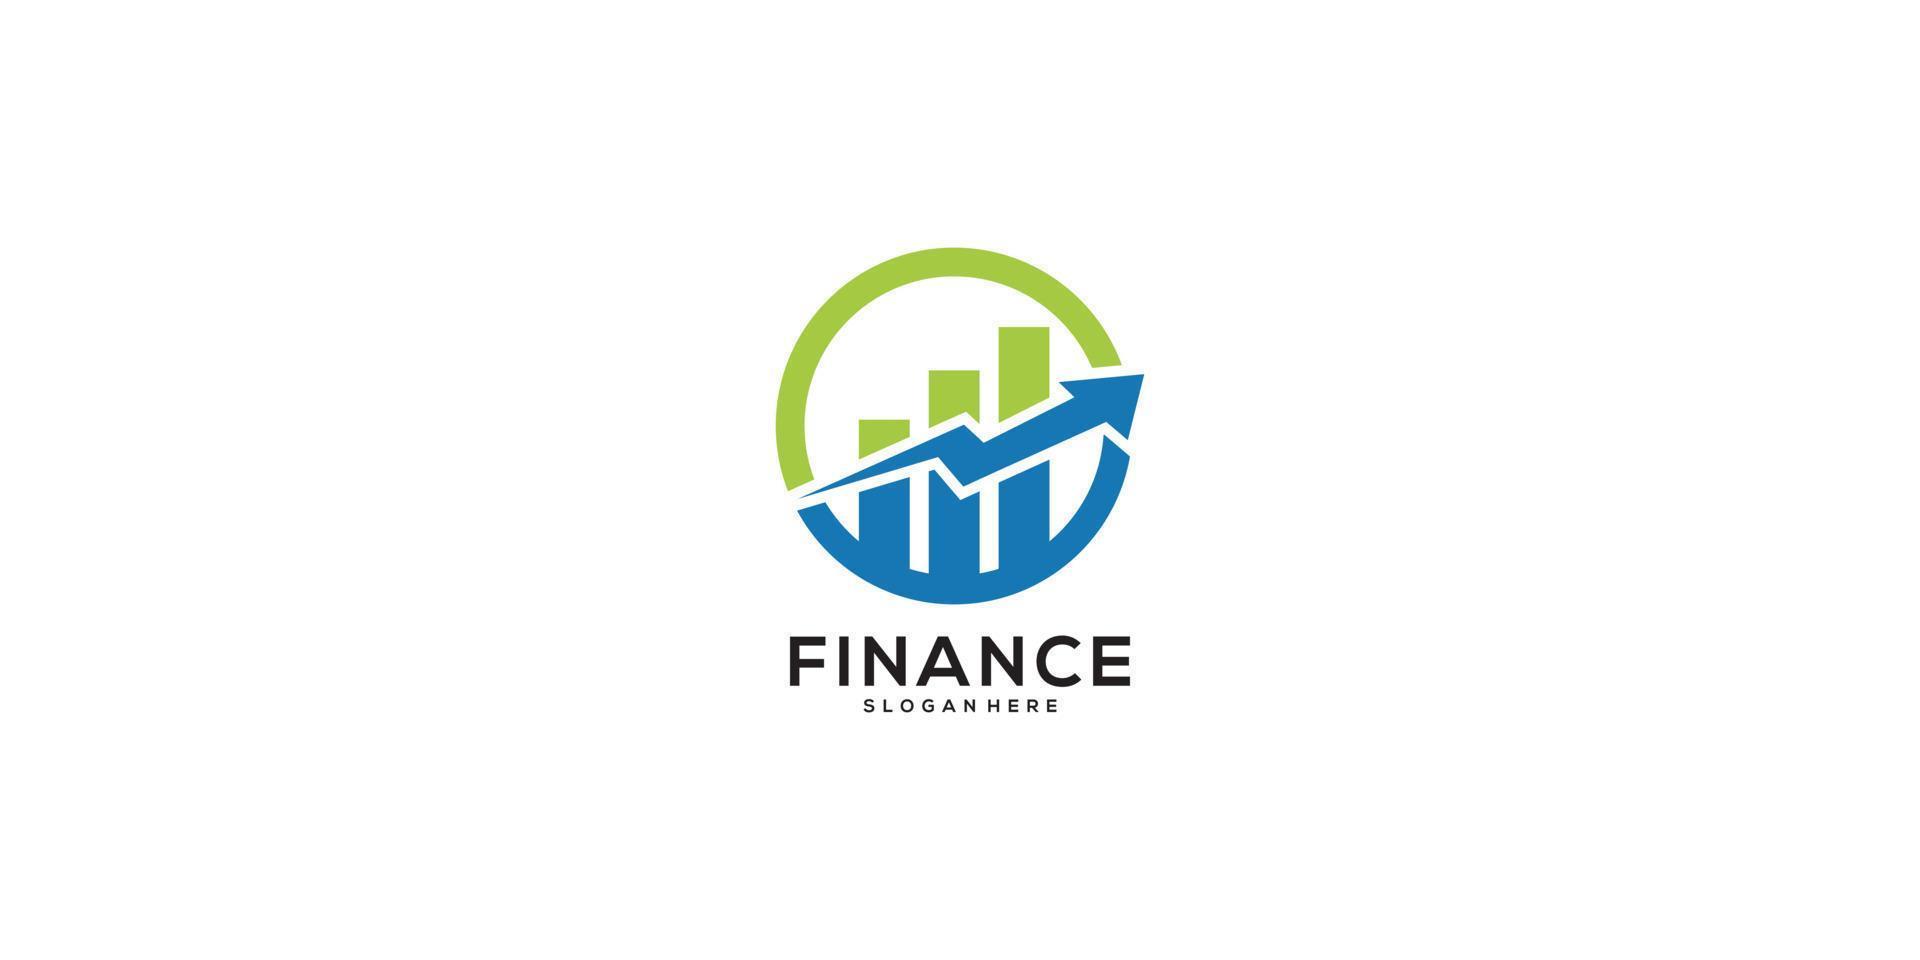 Diseño de icono de vector de plantilla de logotipo de finanzas empresariales